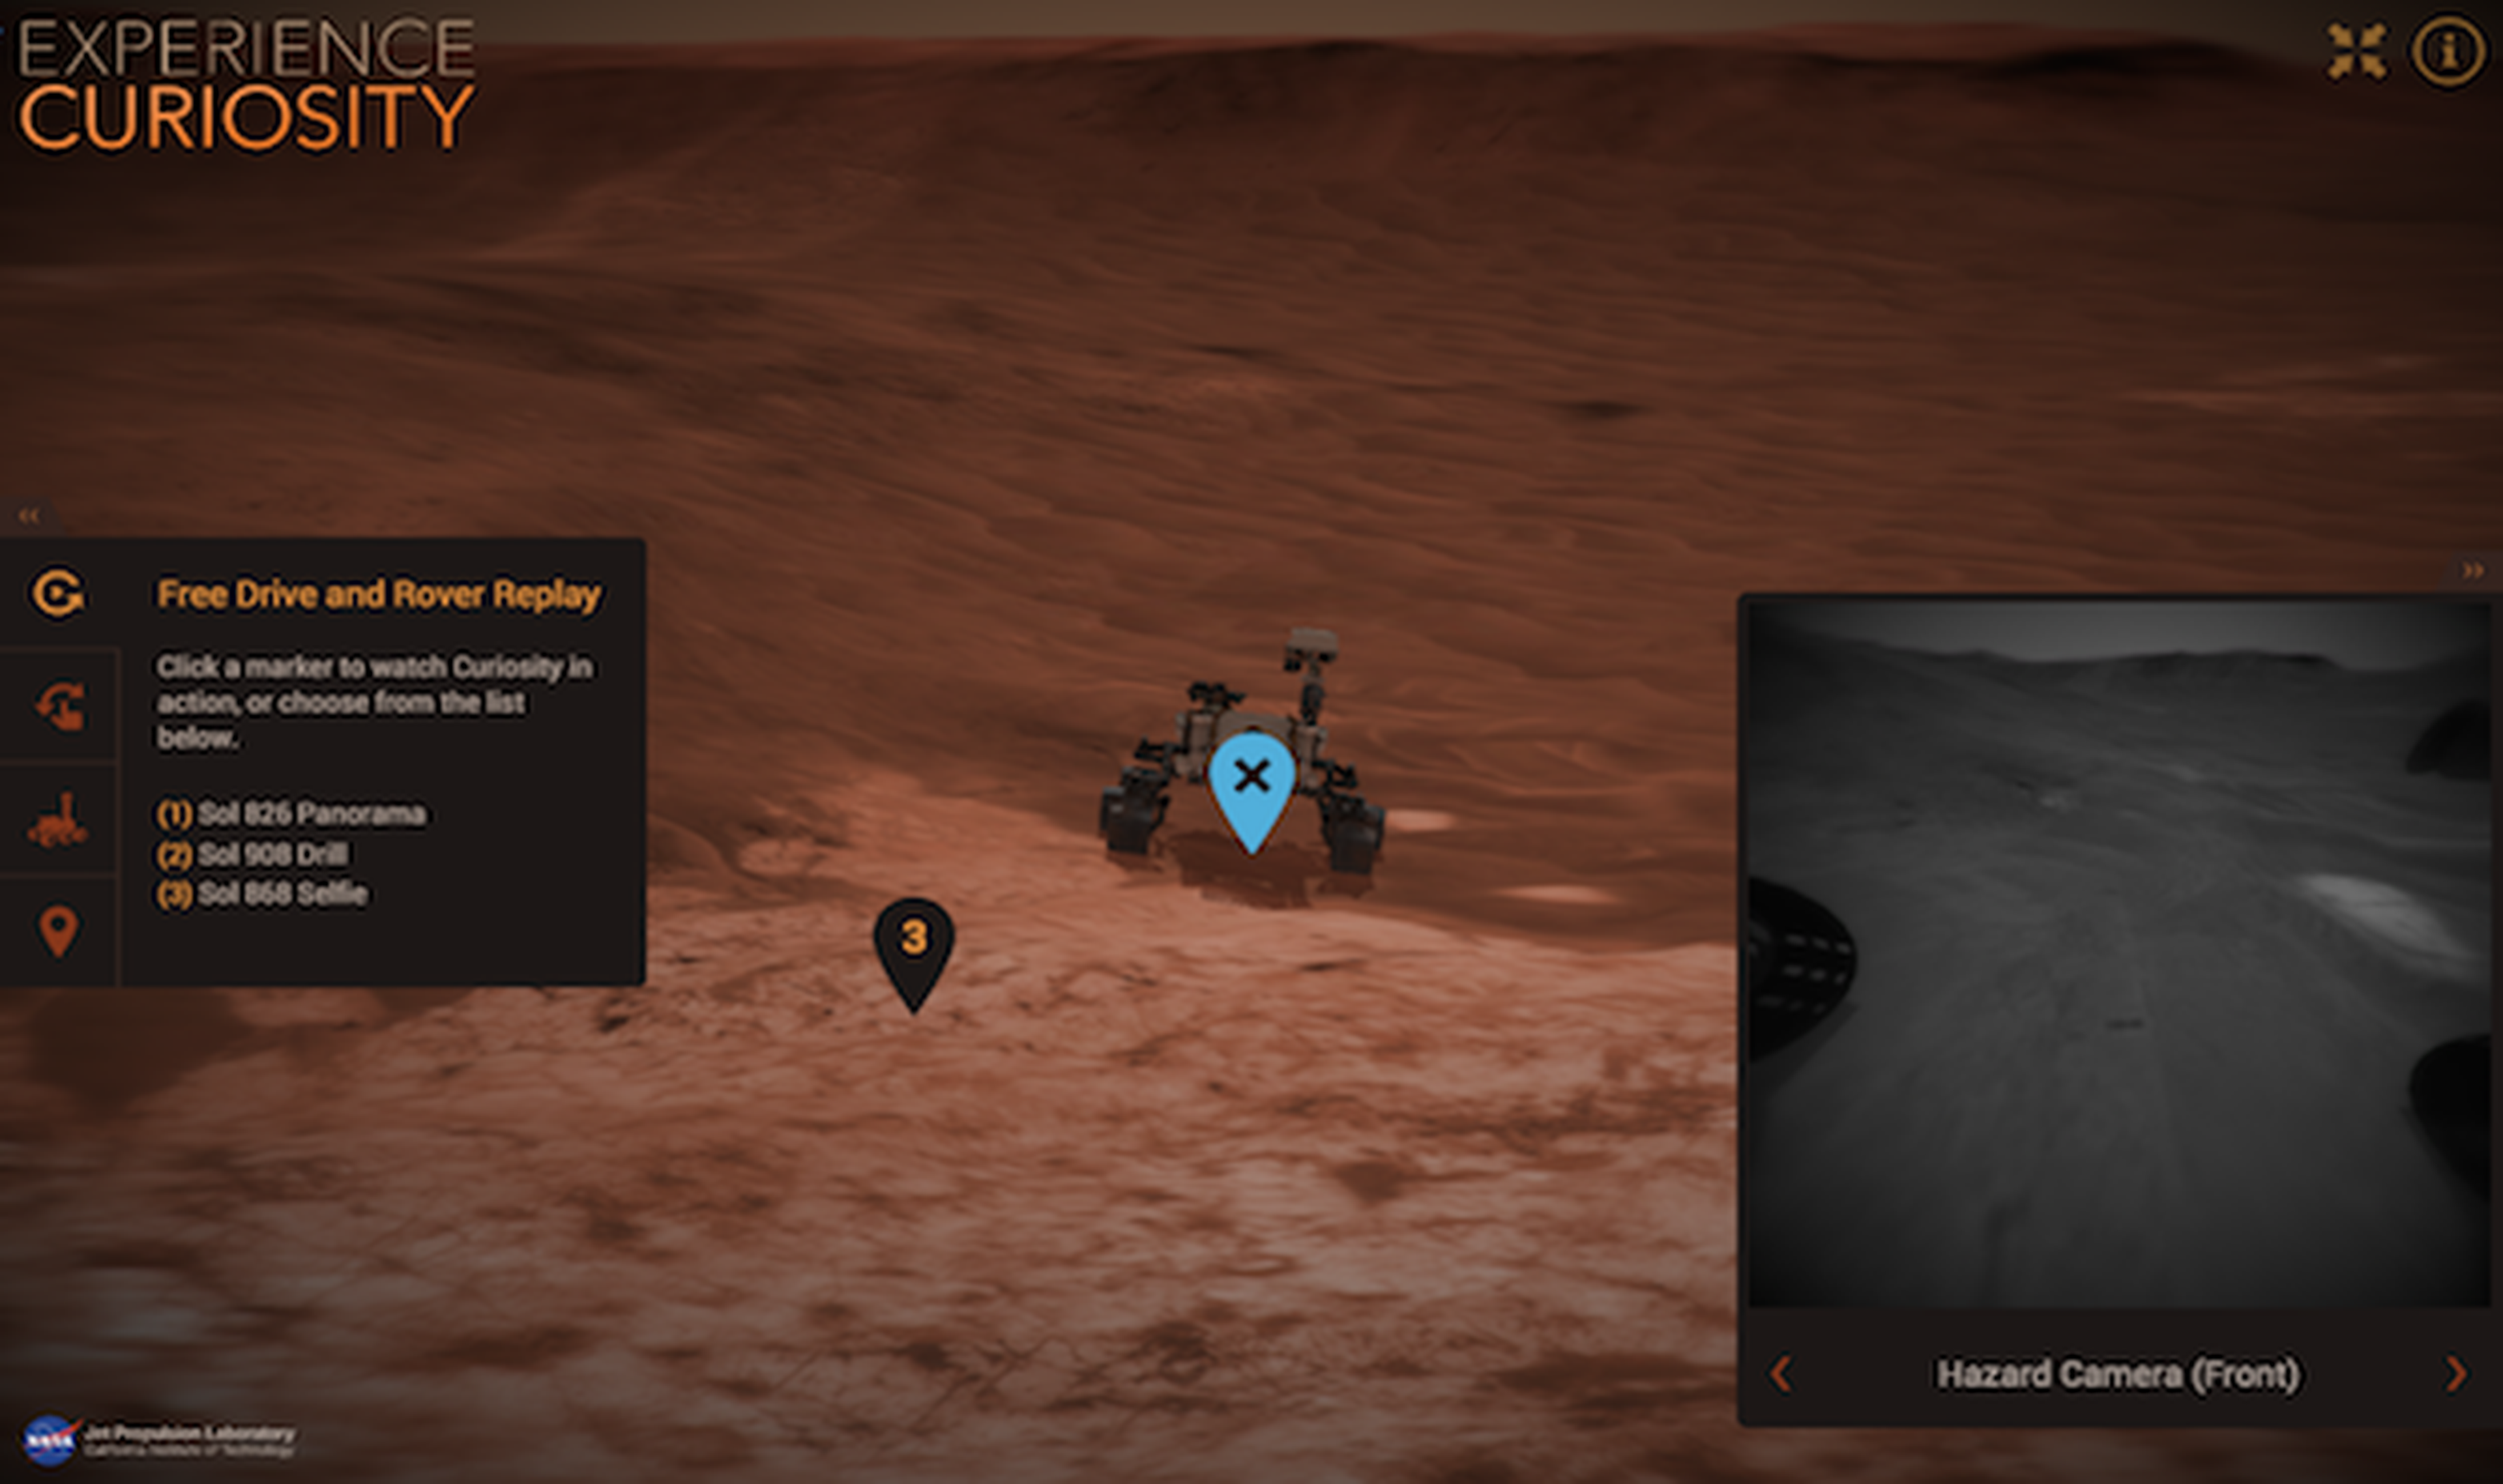 Pasea el Curiosity de la NASA como si estuvieras en Marte